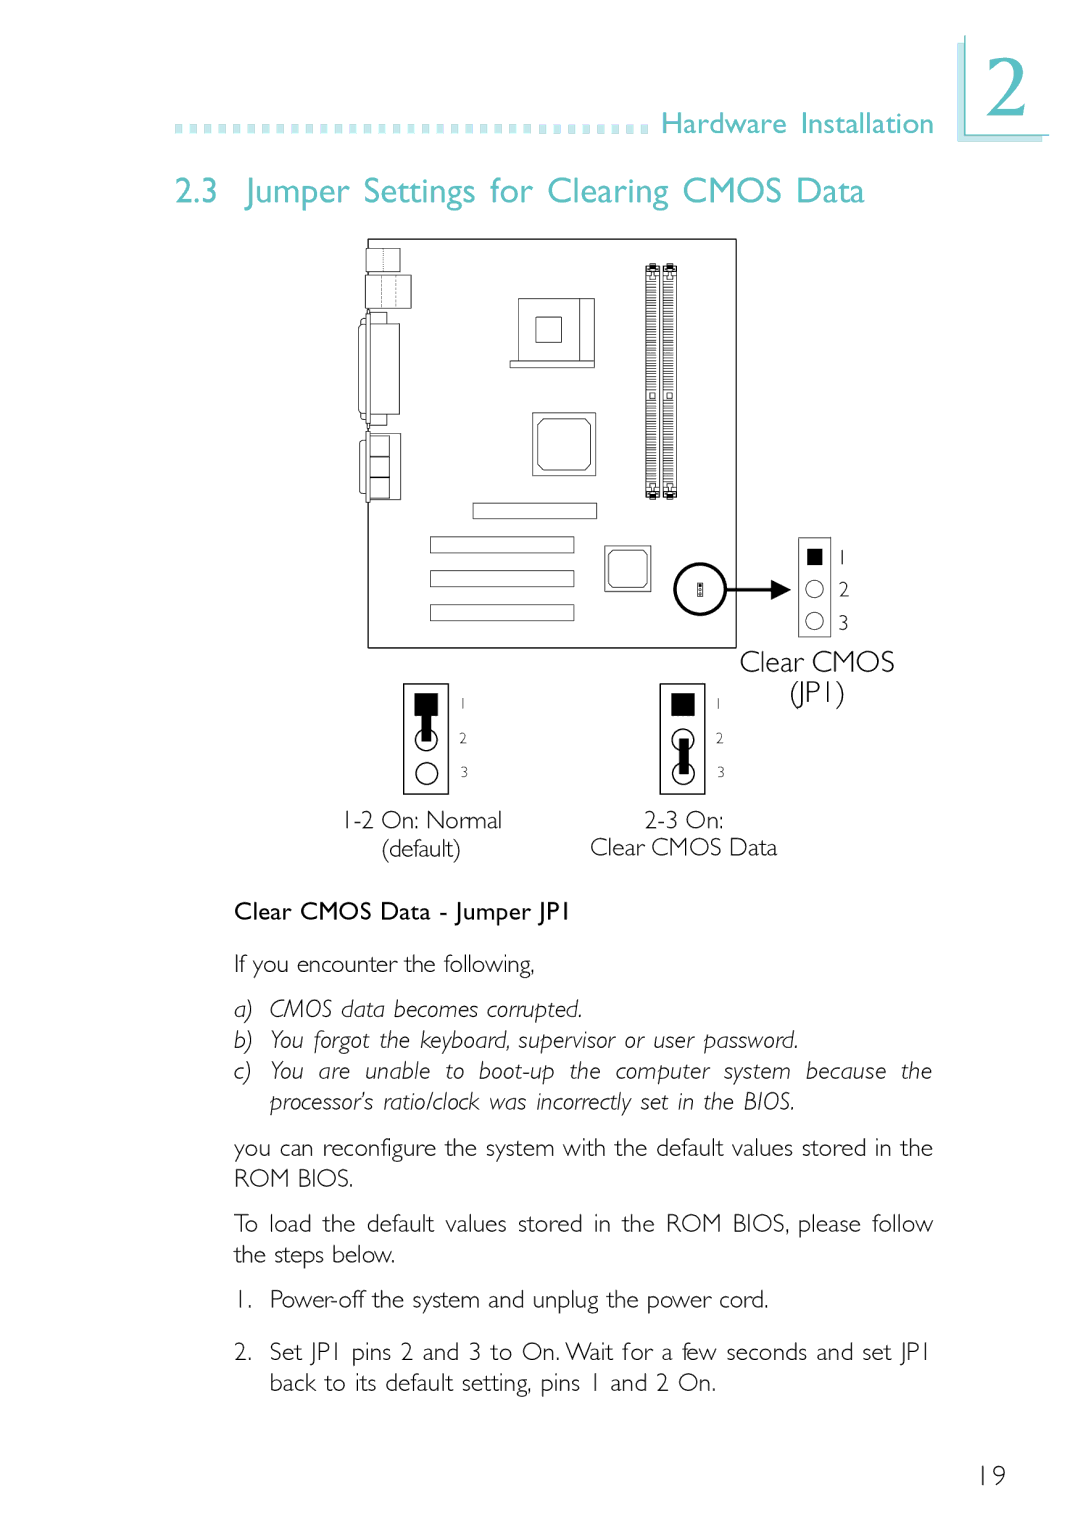 DFI PM12-EC, PM12-EL user manual Jumper Settings for Clearing Cmos Data, JP1 